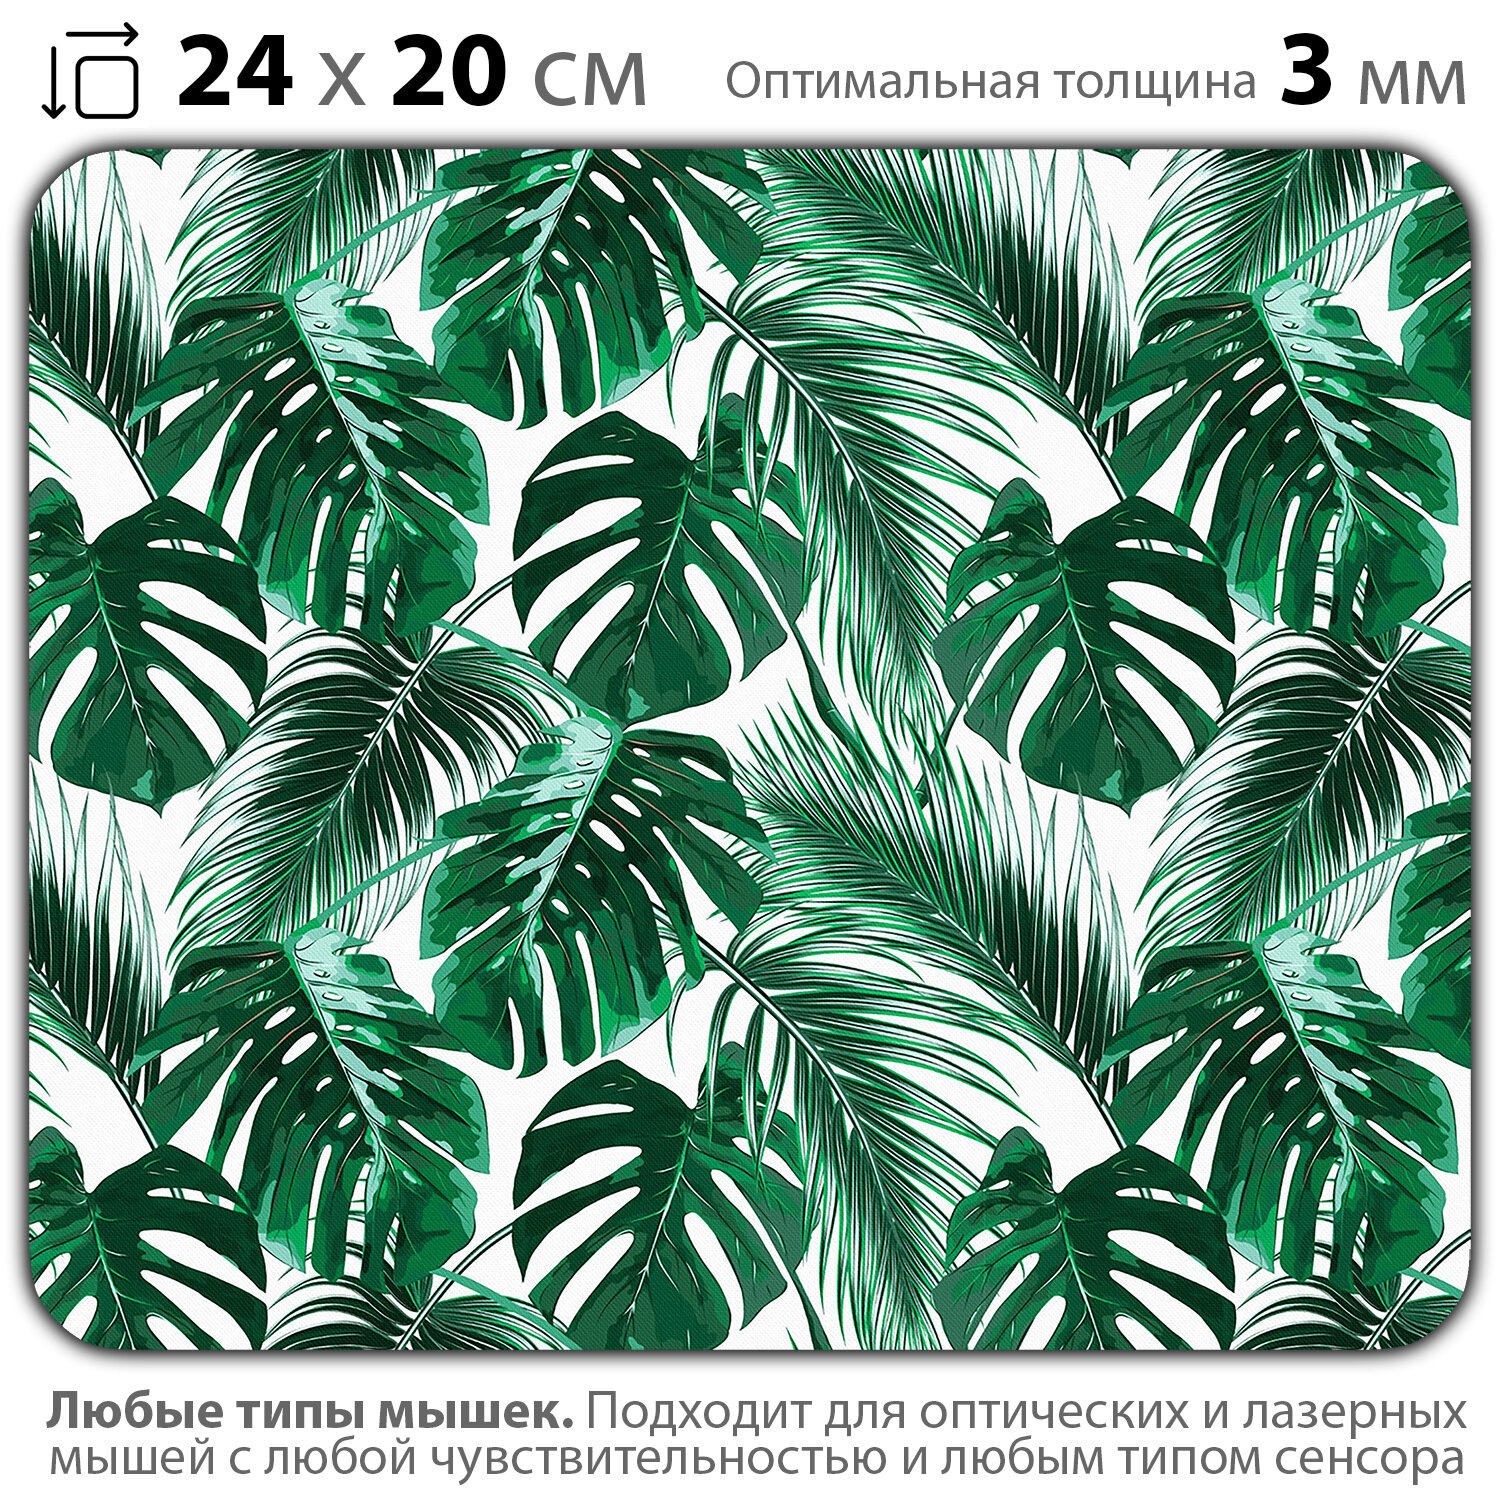 Коврик для мыши "Зелёные тропические растения" (24 x 20 см x 3 мм)